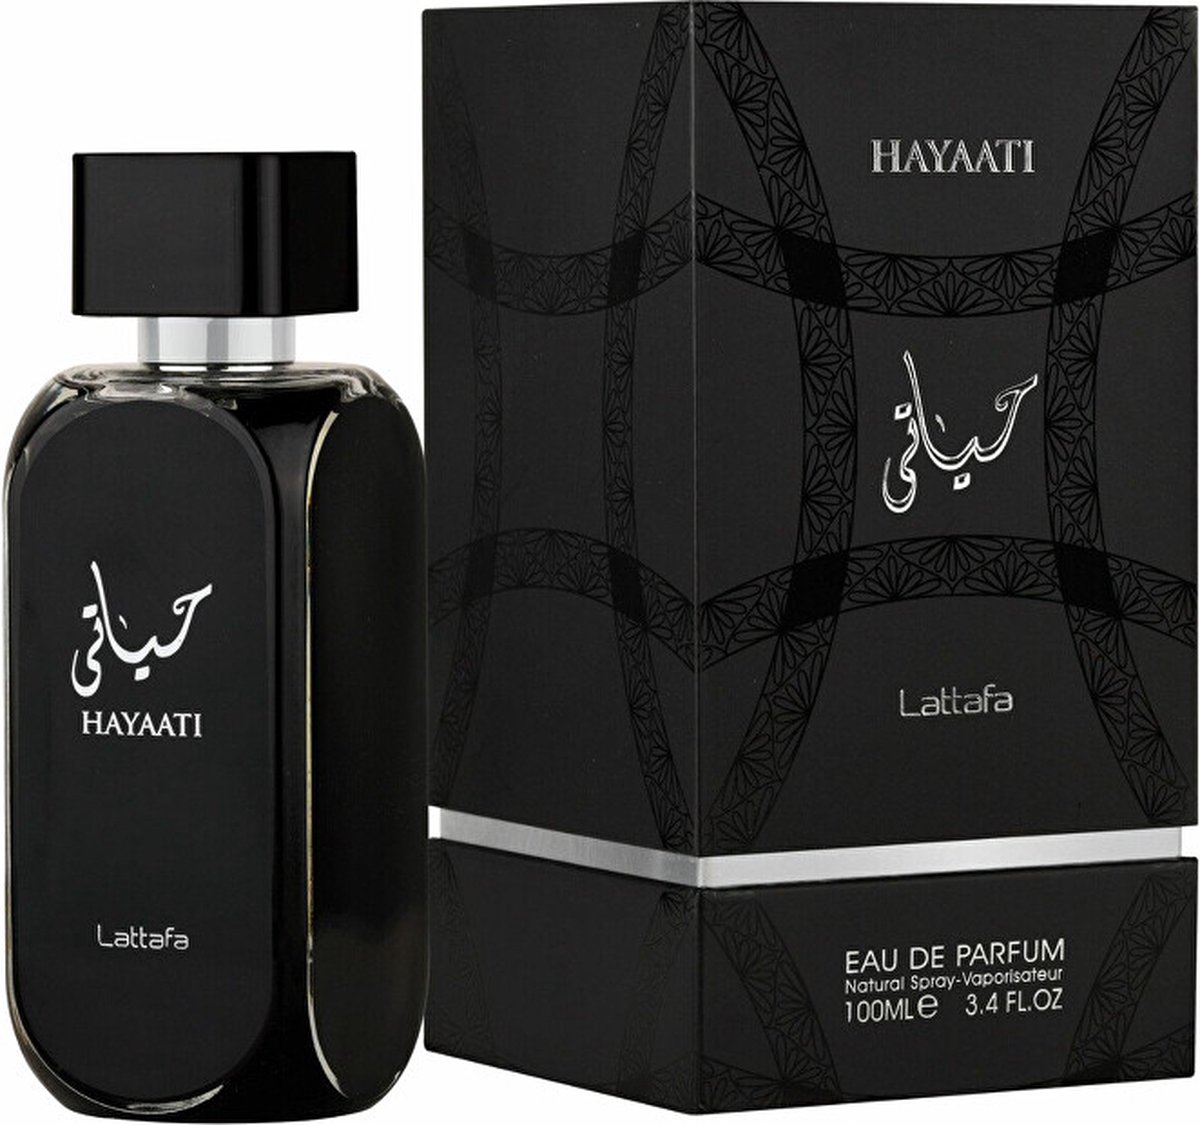 Lattafa Hayaati Eau De Parfum 100 Ml